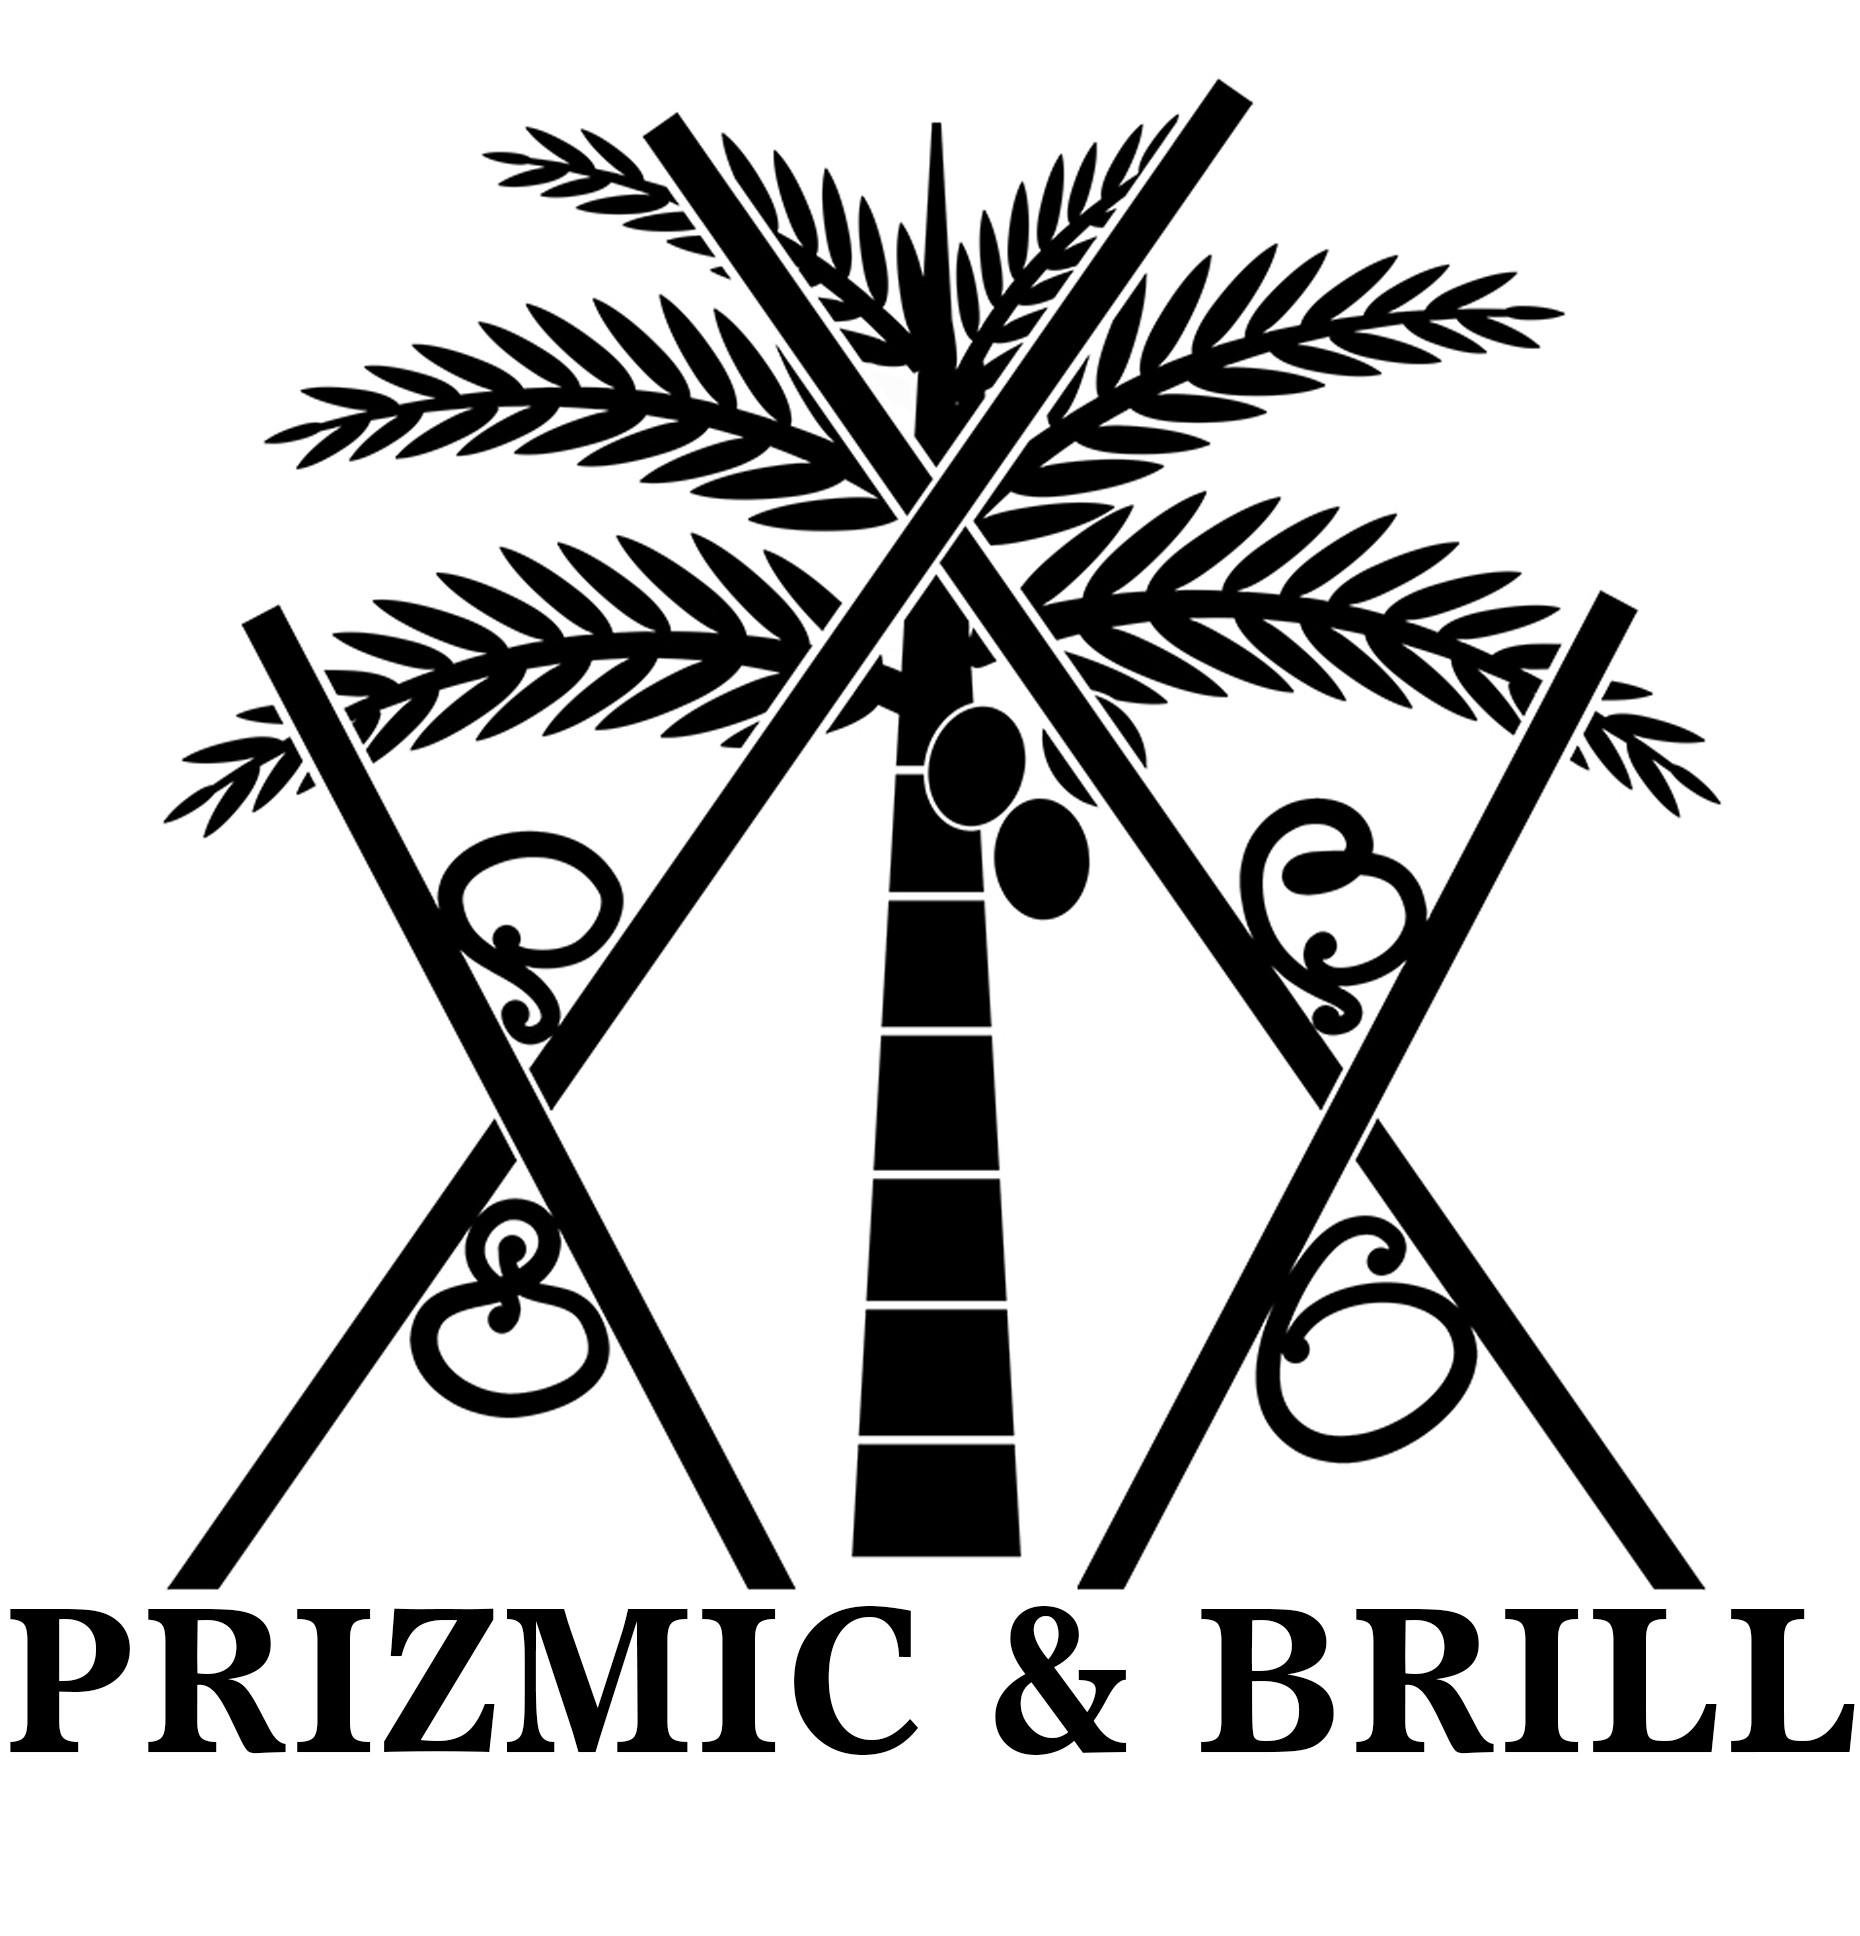 Prizmic & Brill